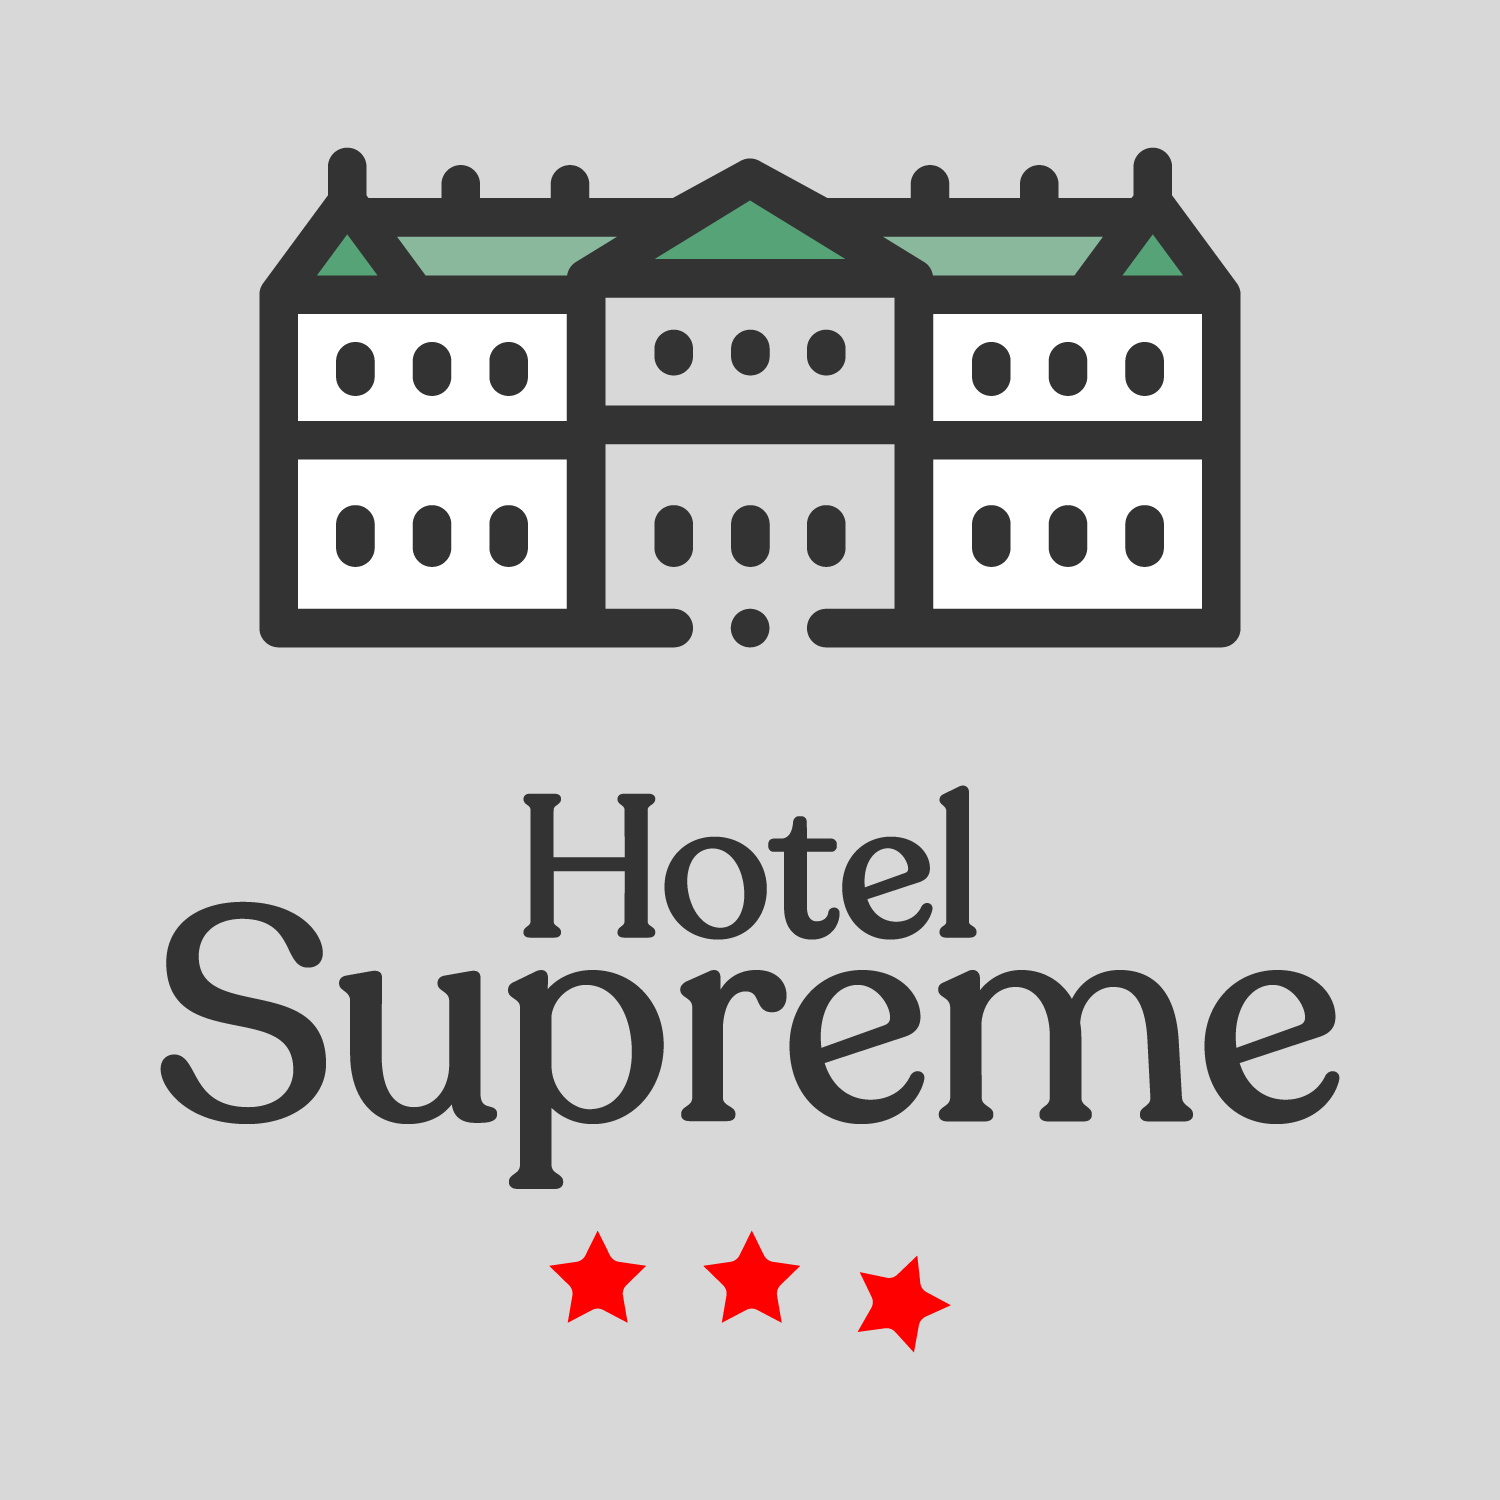 Hotel Supreme - Sitcom Podcast India 